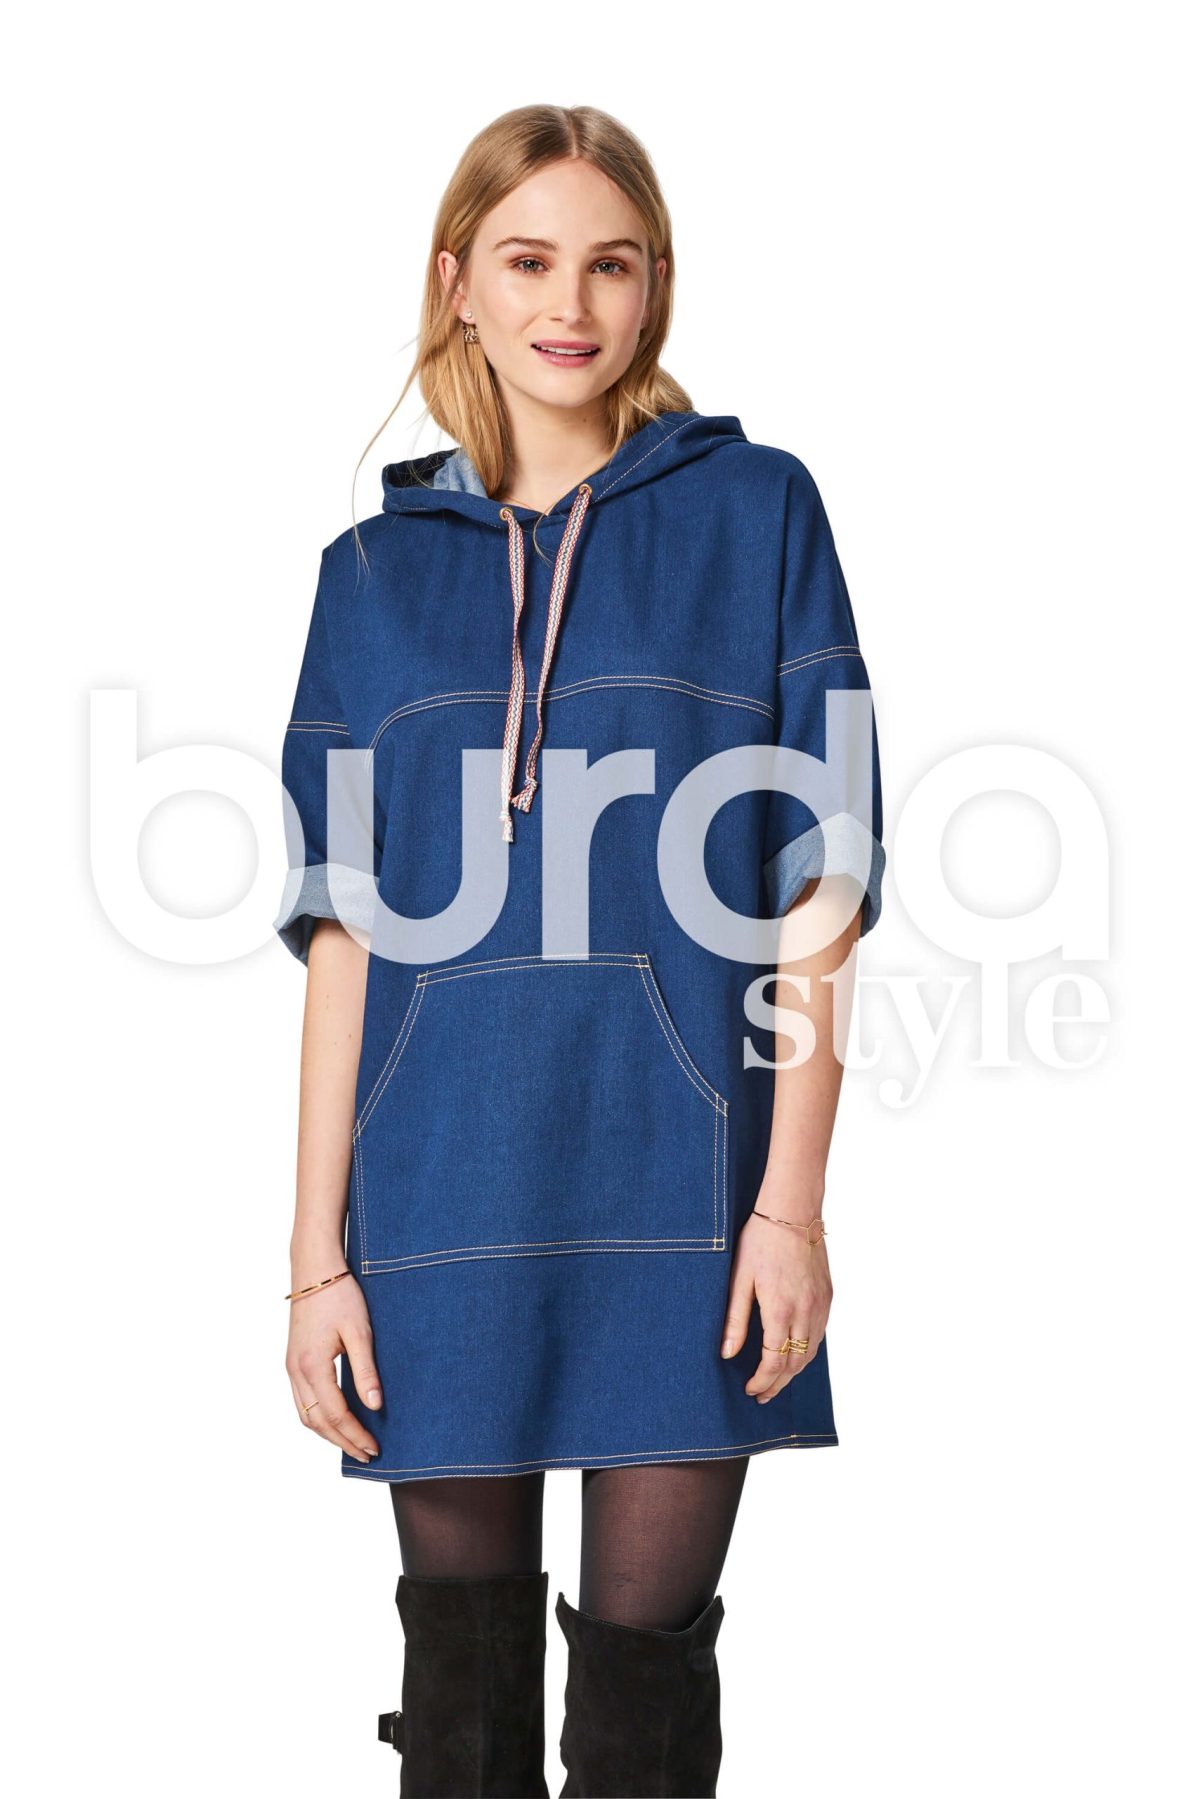 Burda Style Pattern B6475 Women's Hooded Dress